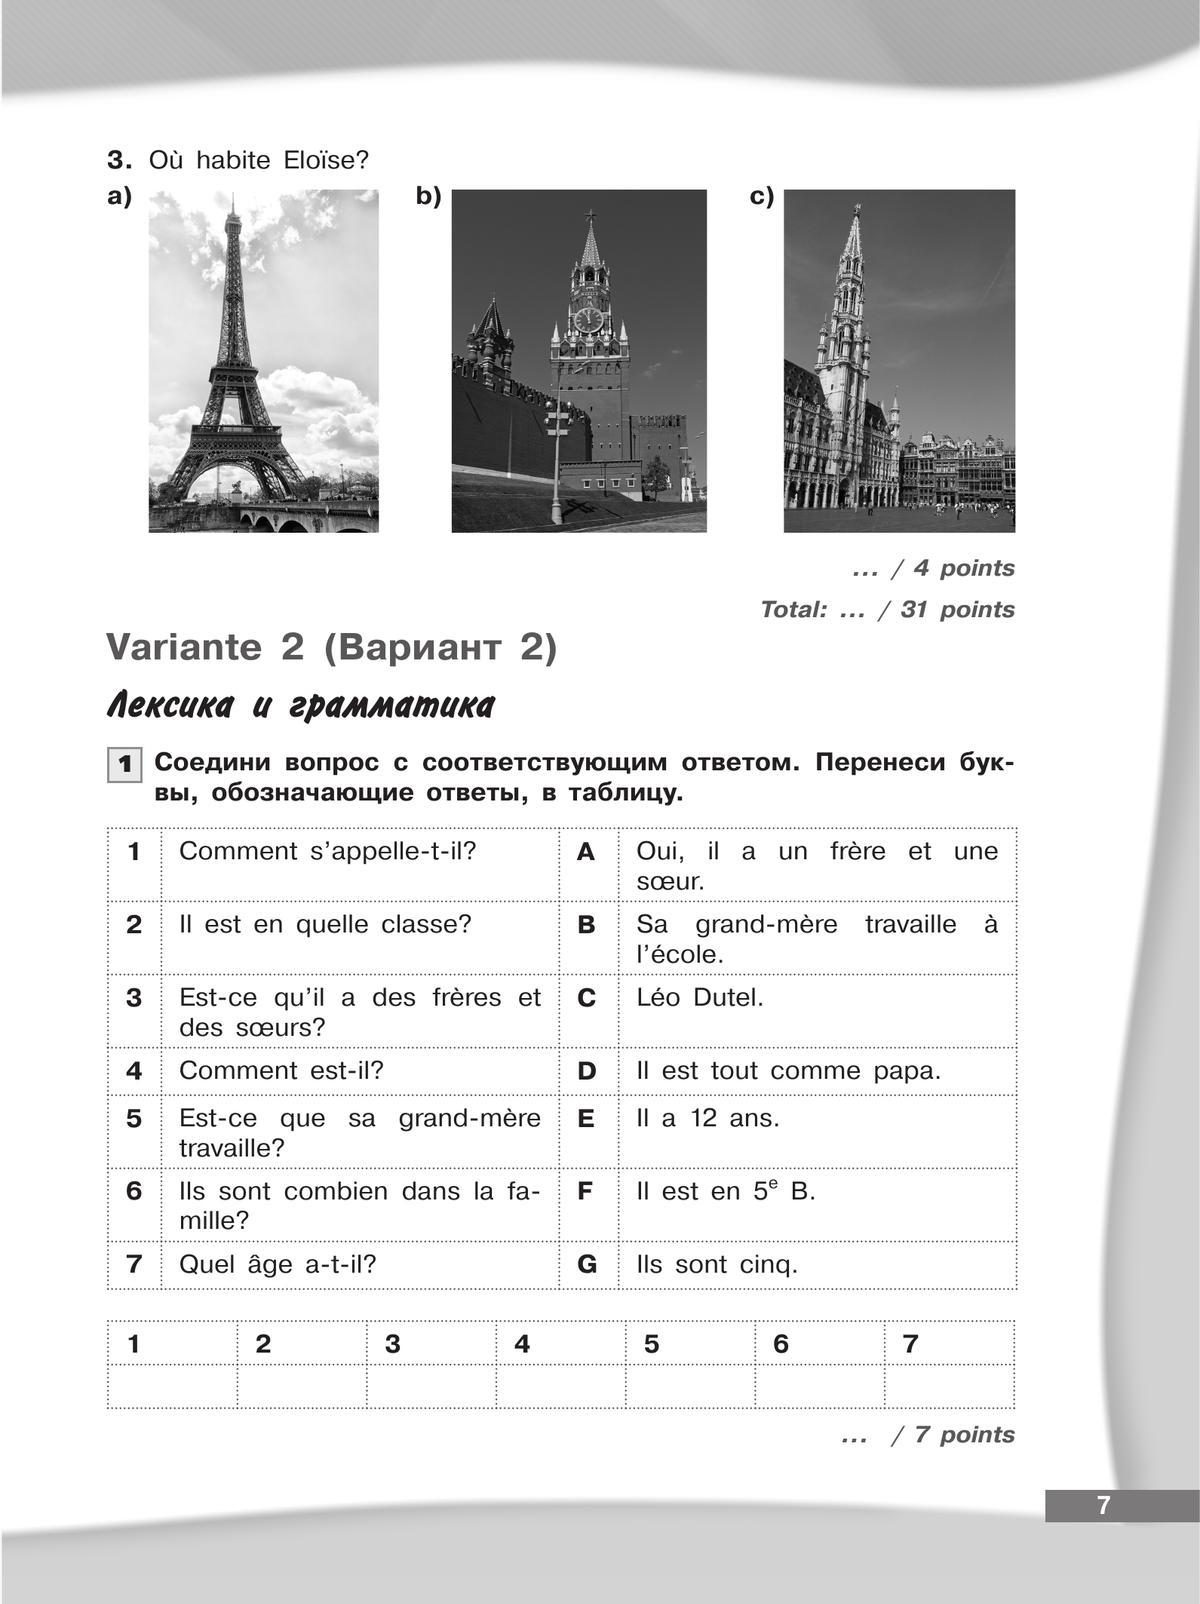 Французский язык. Второй иностранный язык. Контрольные и проверочные работы. 5-6 классы. 11